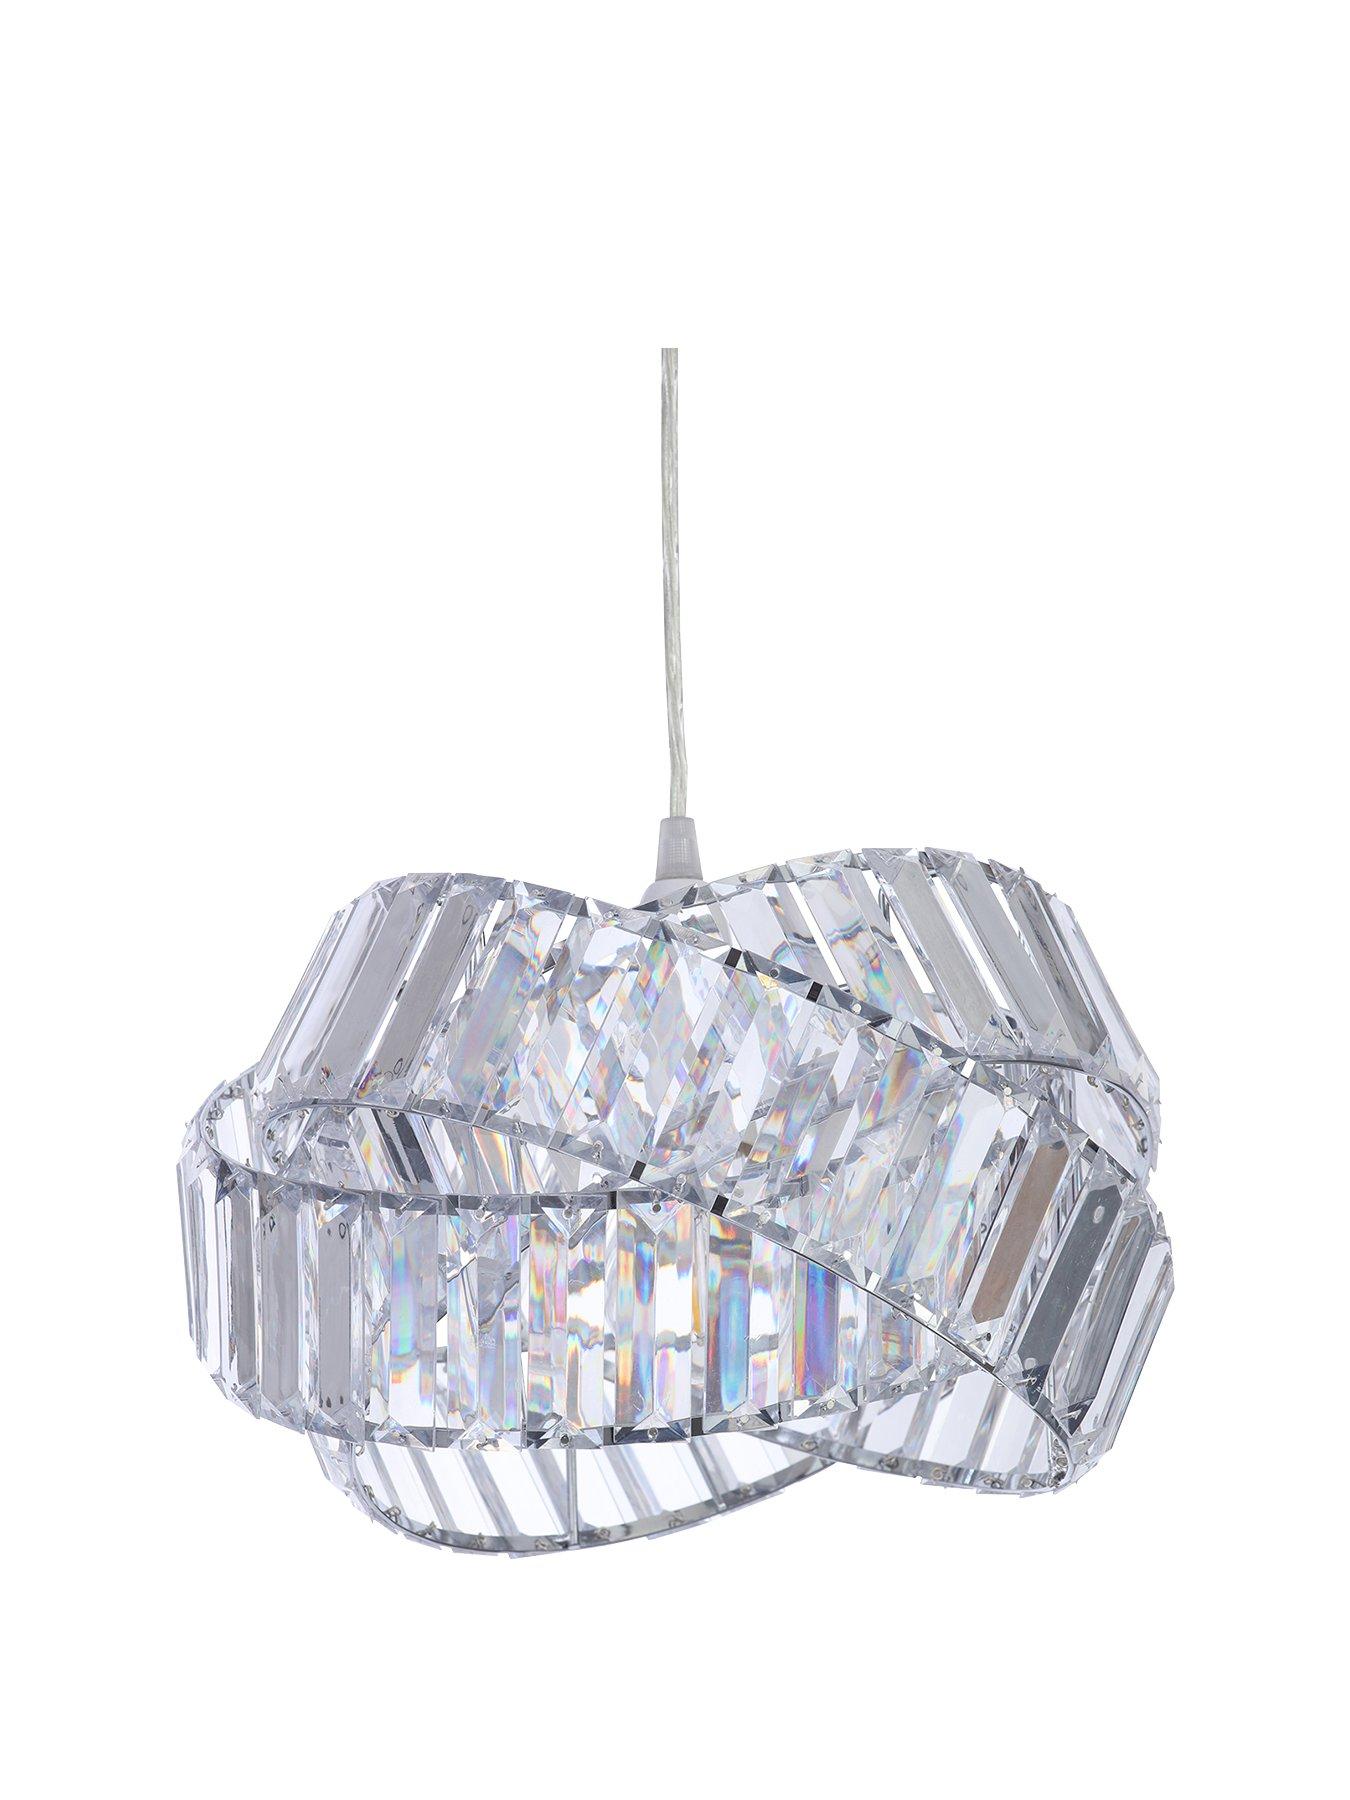 Warm White 3000K White Diamond LED Light Ceiling Lamp Chandelier Lighting Fixture 53 cm Wide 53 cm Deep 9 cm High 